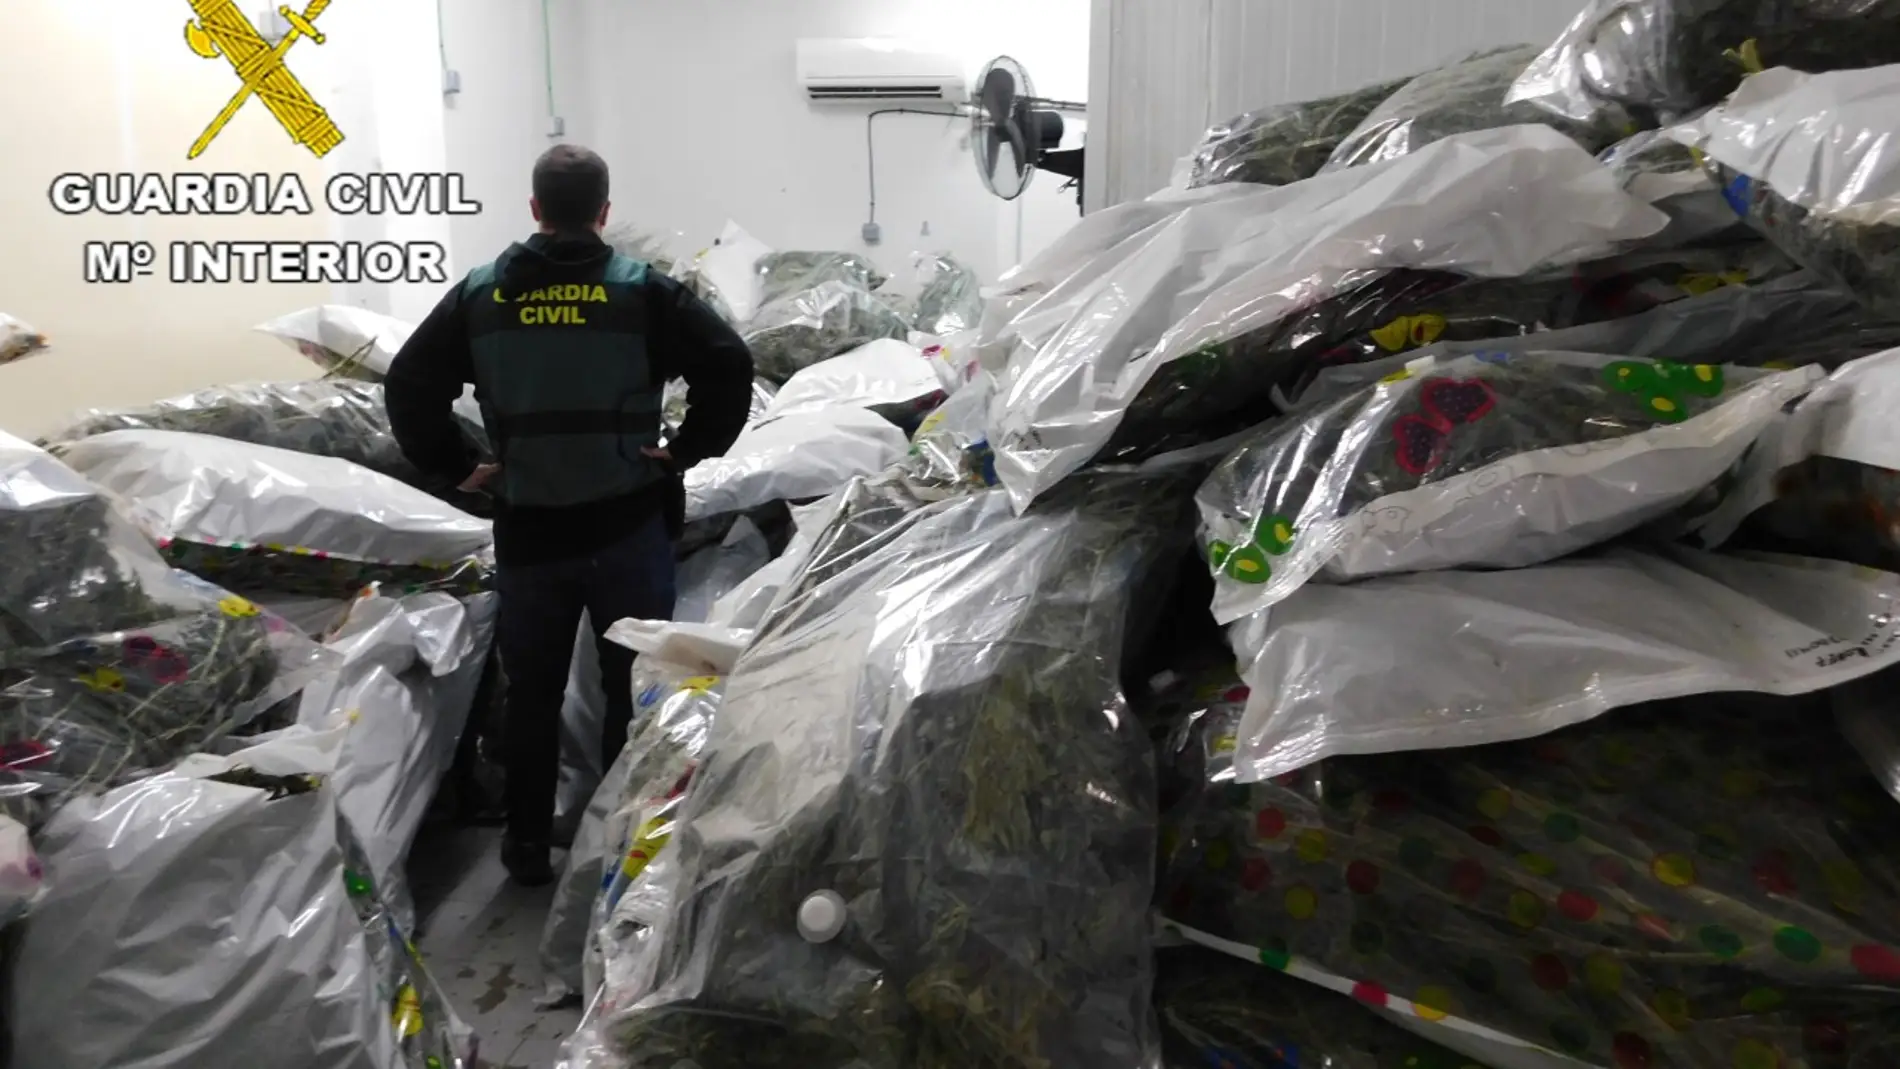 El edificio registrado tenía capacidad para almacenar 10.000 kilos de marihuana